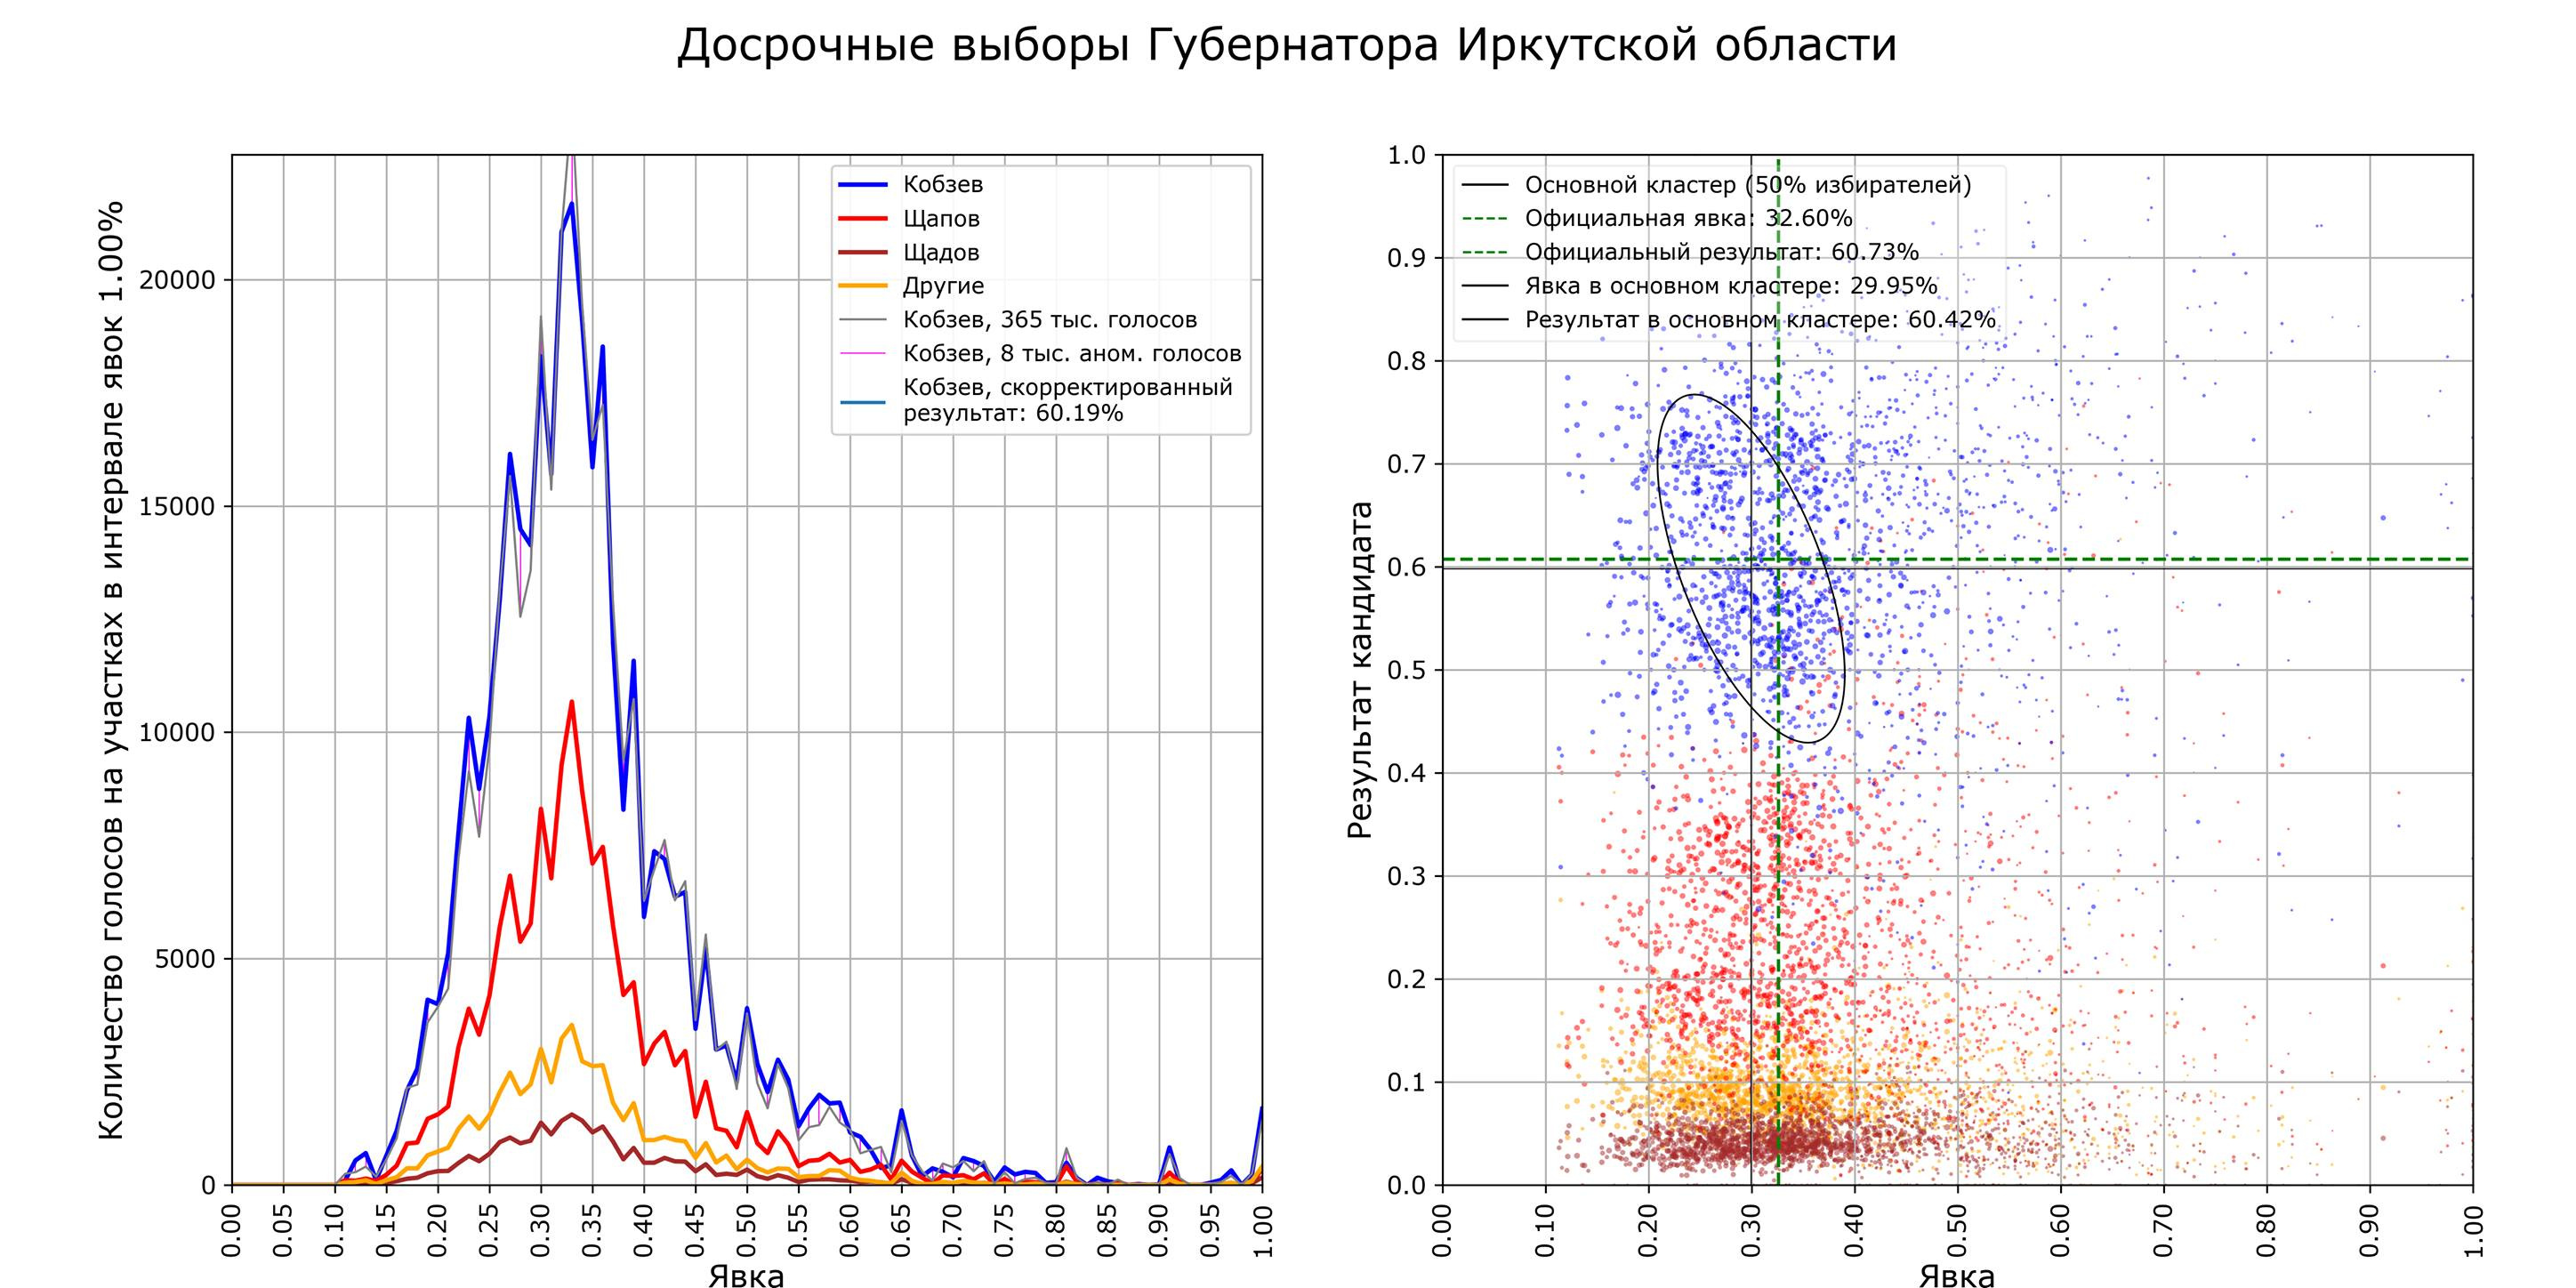 Для сравнения: нормальное распределение голосов в Сибири